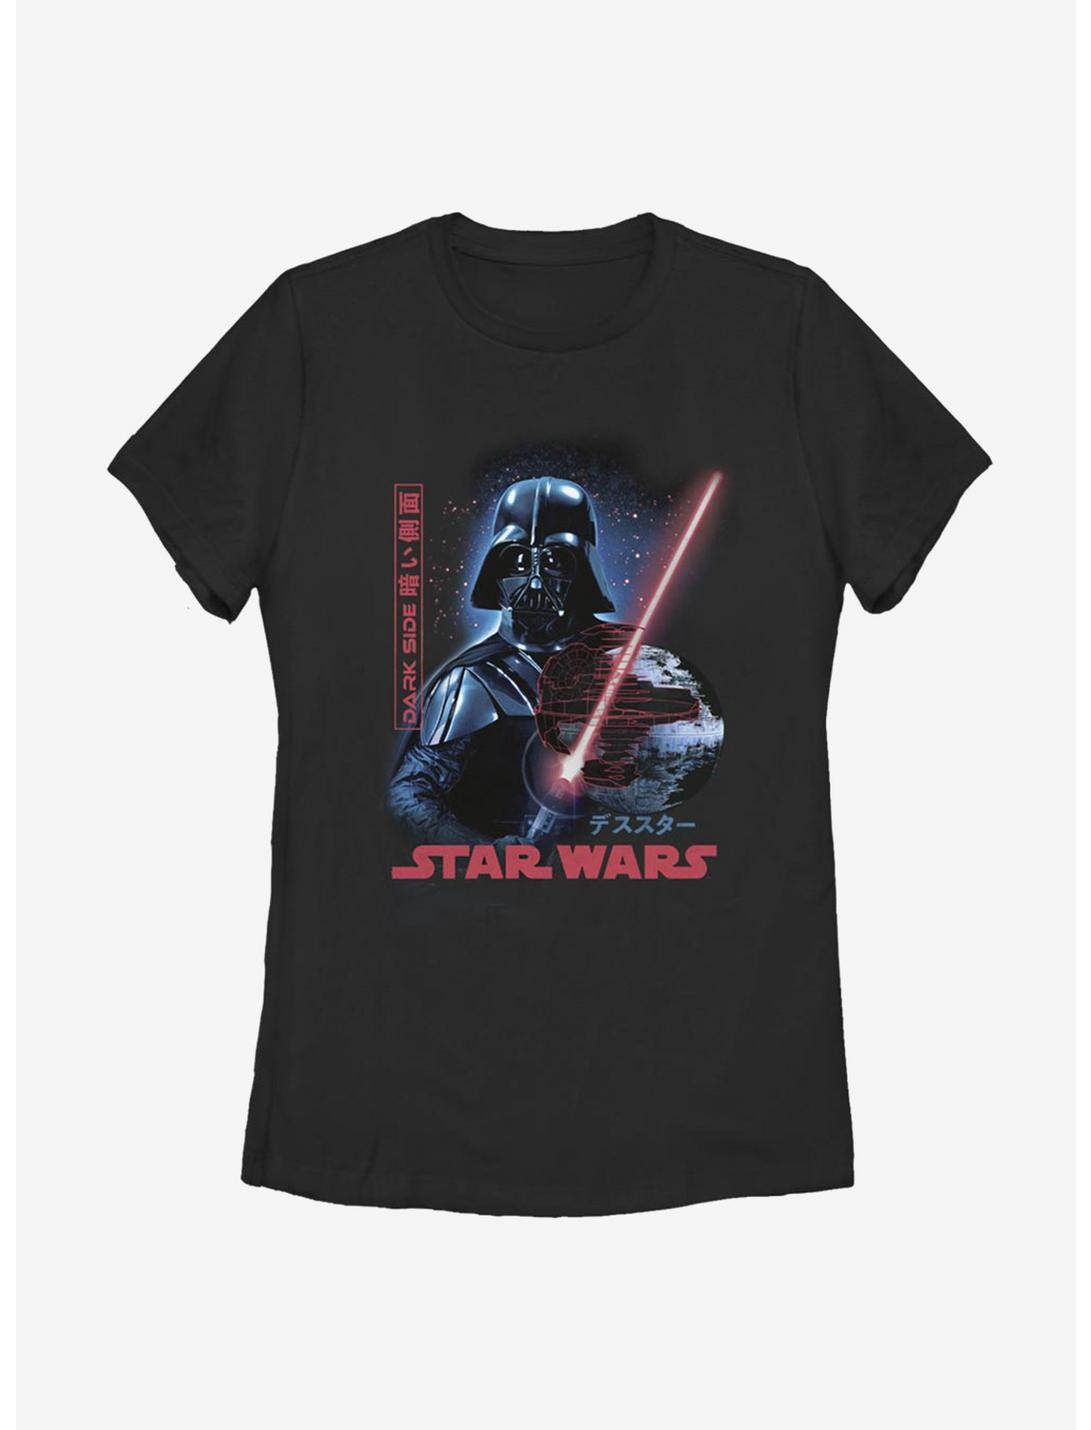 Star Wars Darth Vader Empire Japanese Text Womens T-Shirt, BLACK, hi-res